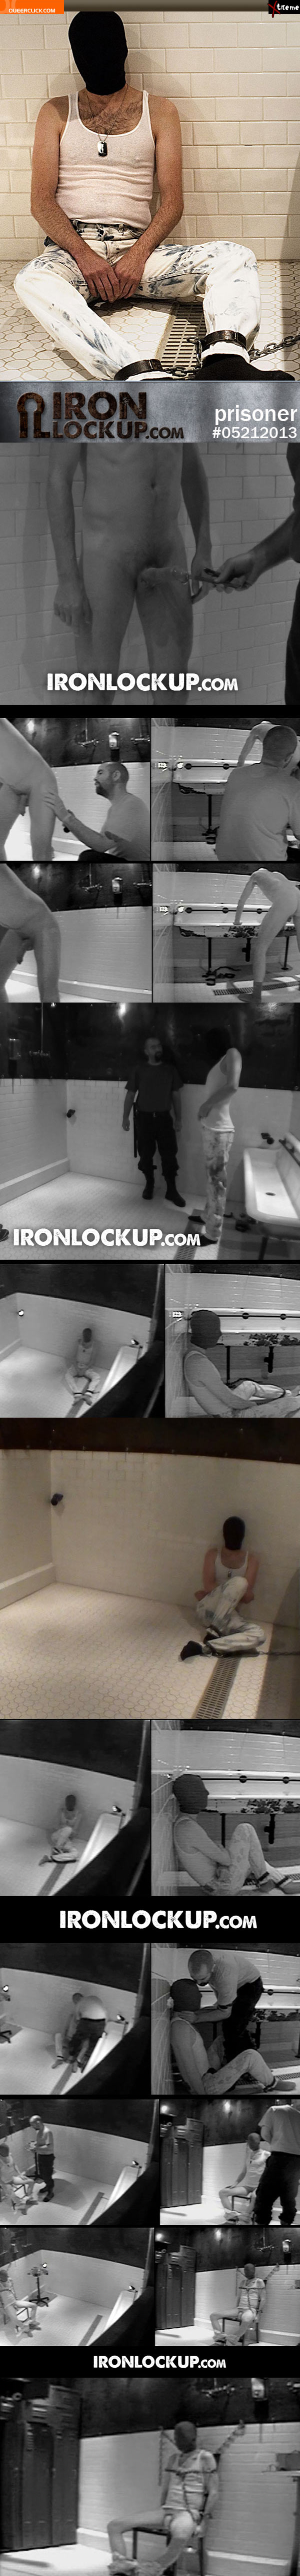 iron lockup 05212013